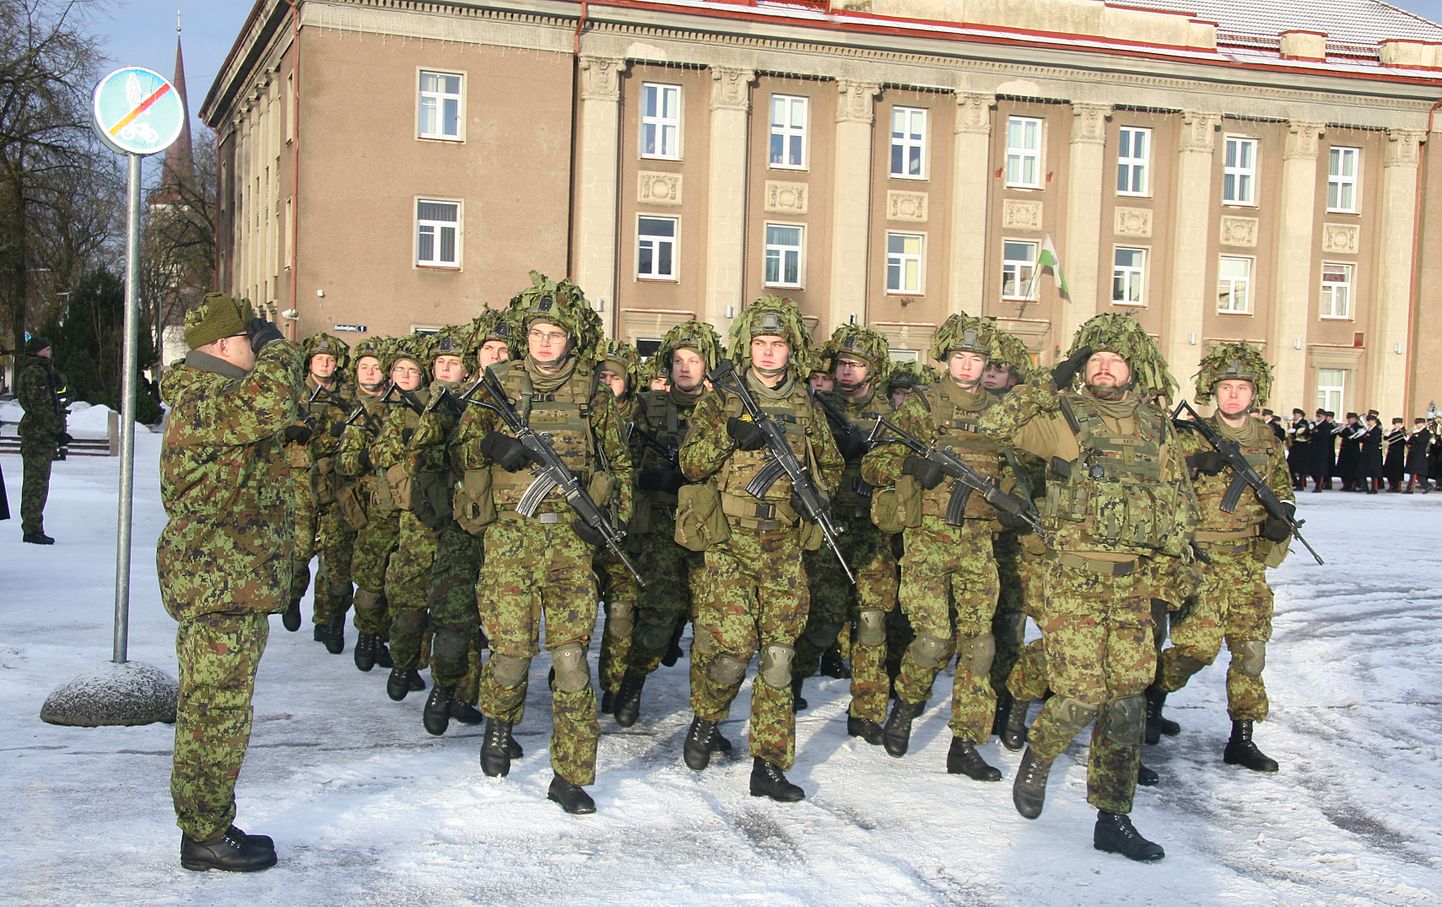 Oma sünnipäeval korraldab Viru pataljon piduliku jalutuskäigu ja rivistuse Jõhvi keskväljakul.